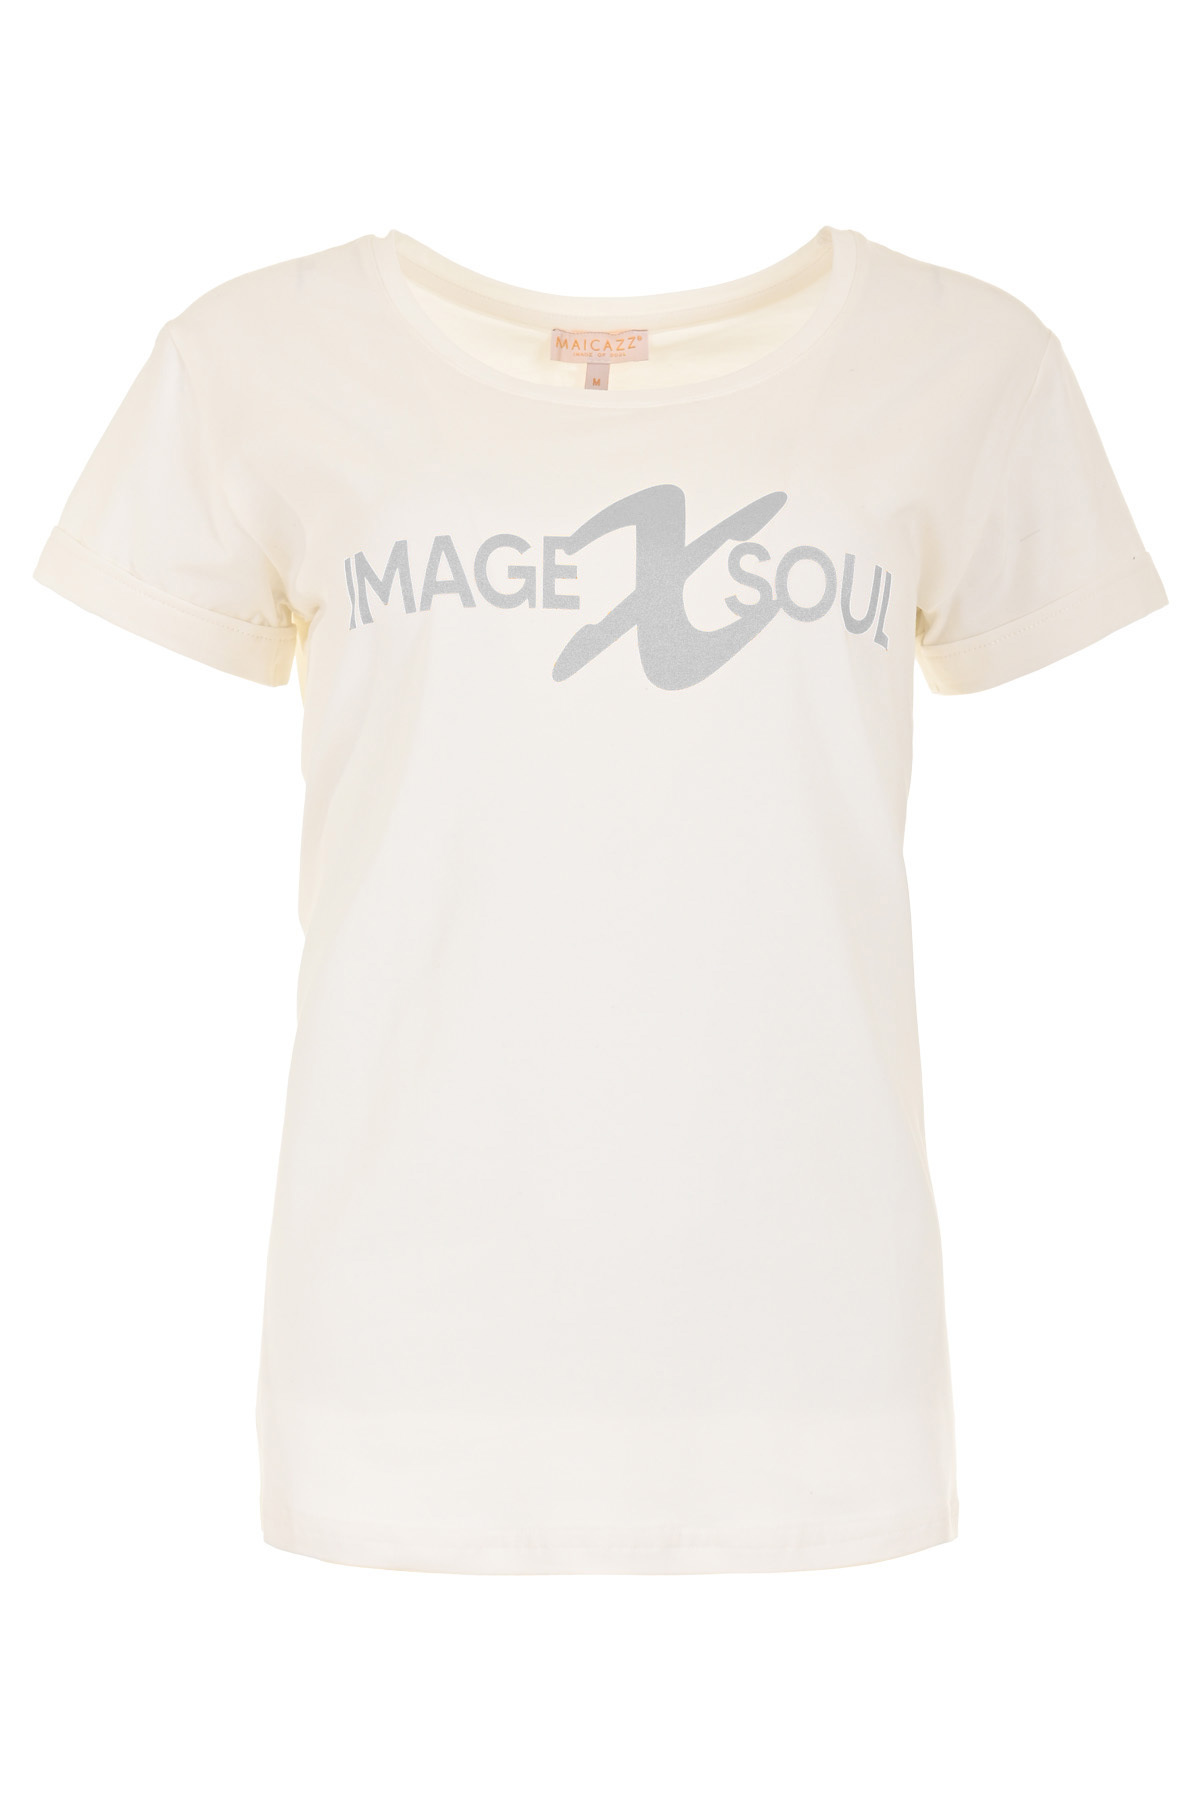 MAICAZZ T-Shirt Yssa Offwhite-Silver